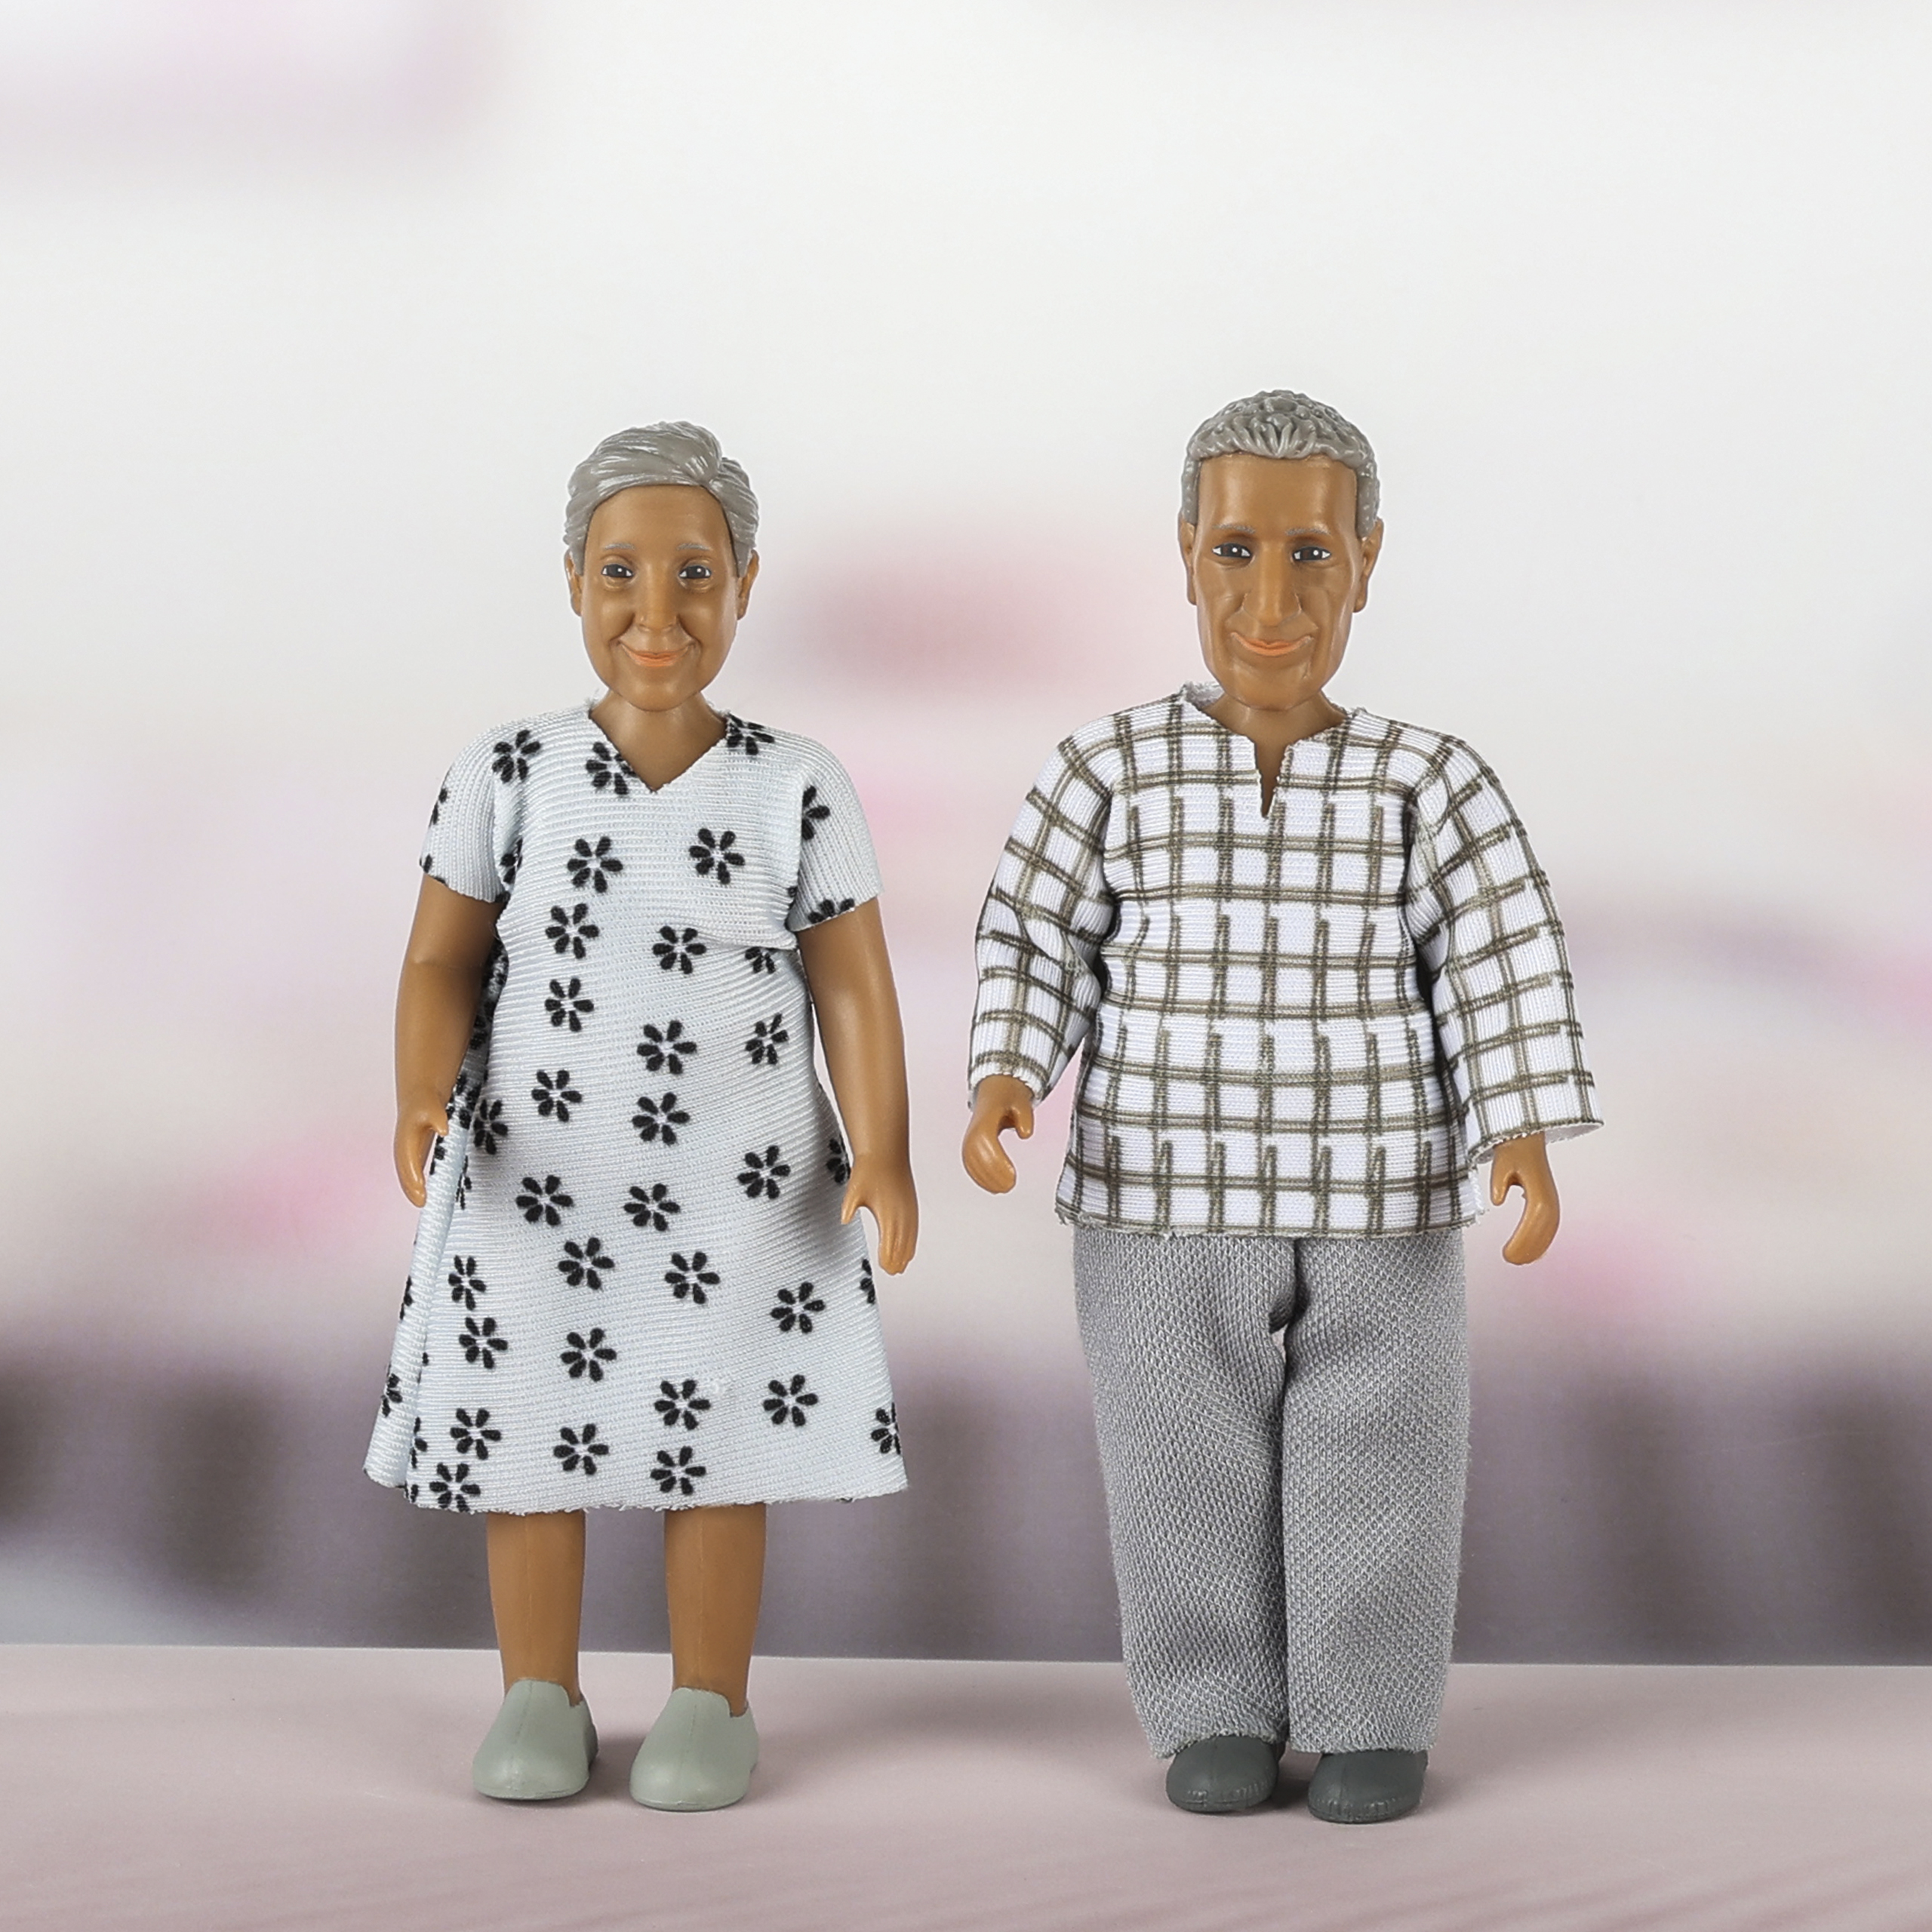 Lundby lundby	dollshouse dolls elderly couple nikki